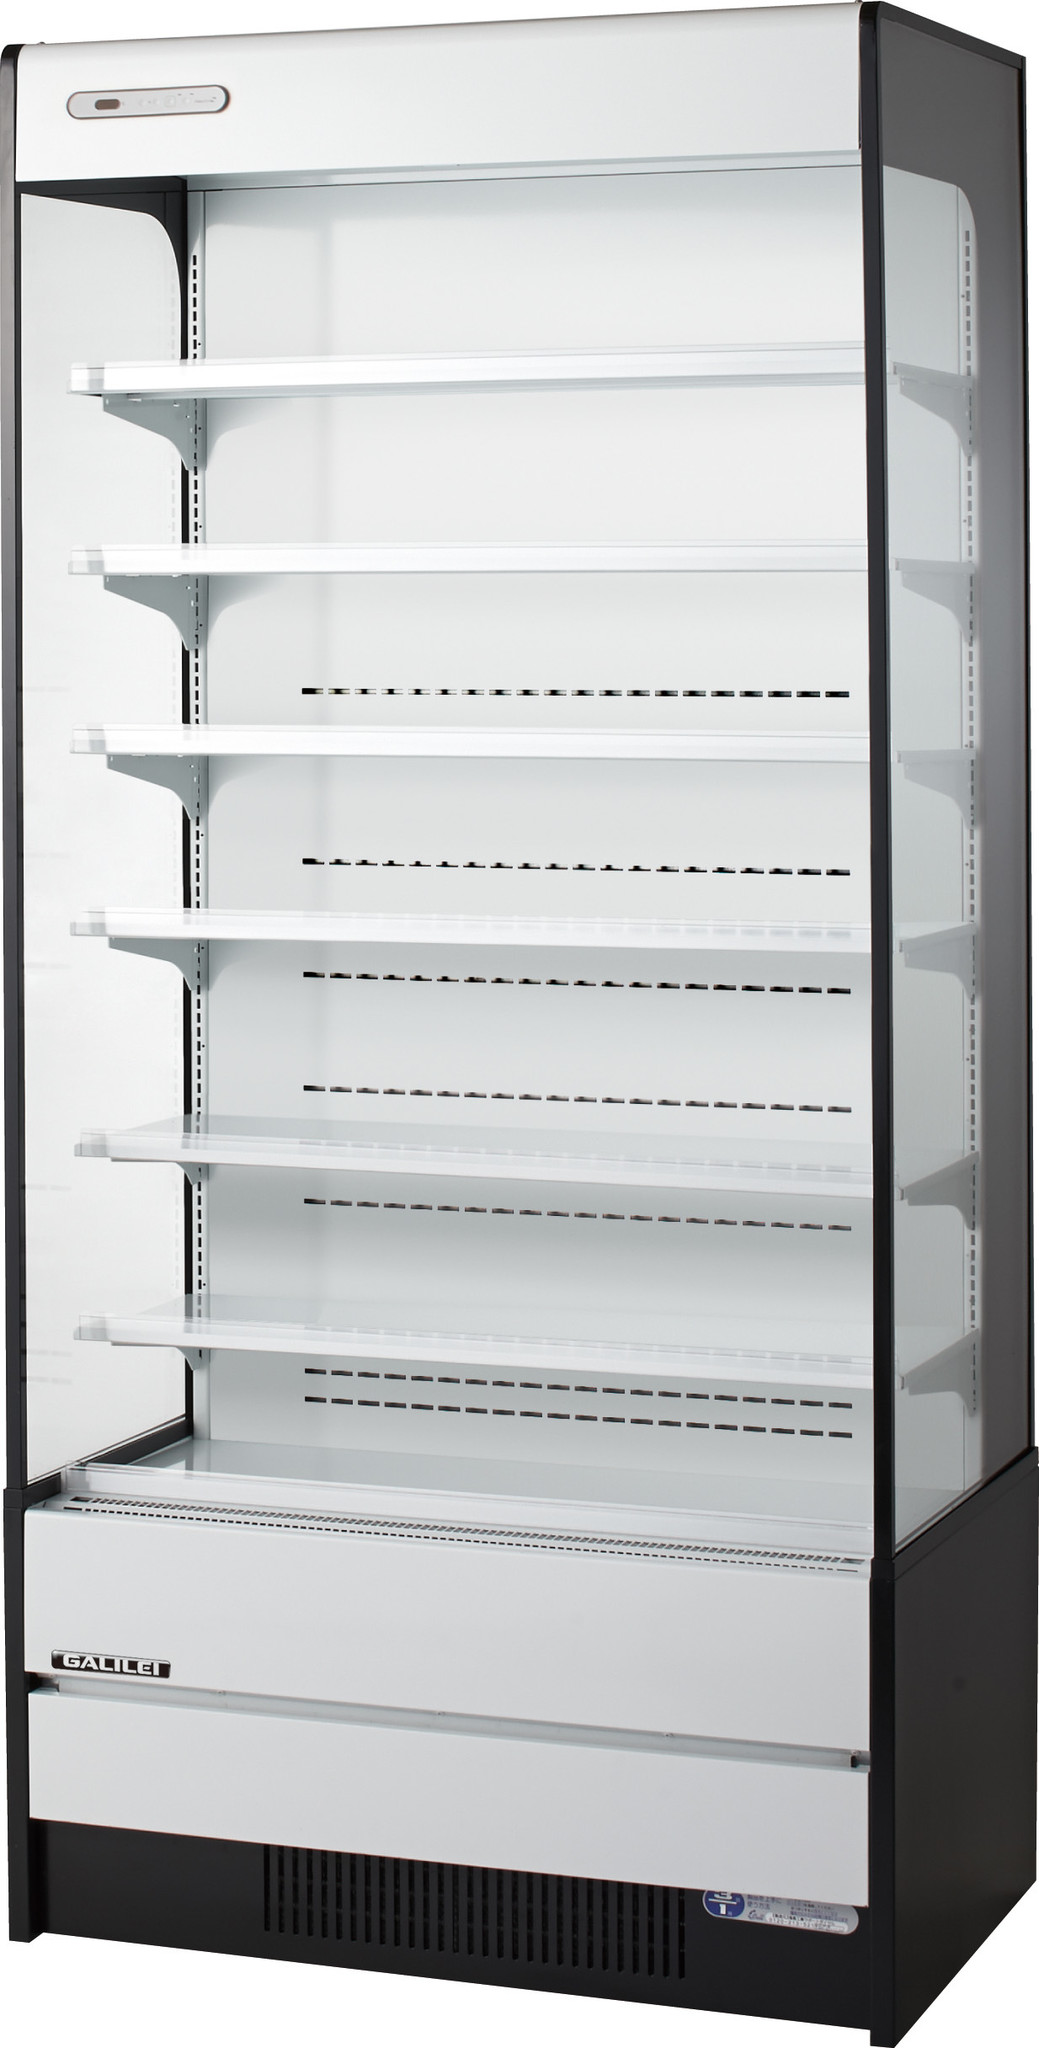 冷凍機内蔵型の多段オープンショーケース下段２温度式タイプモデル